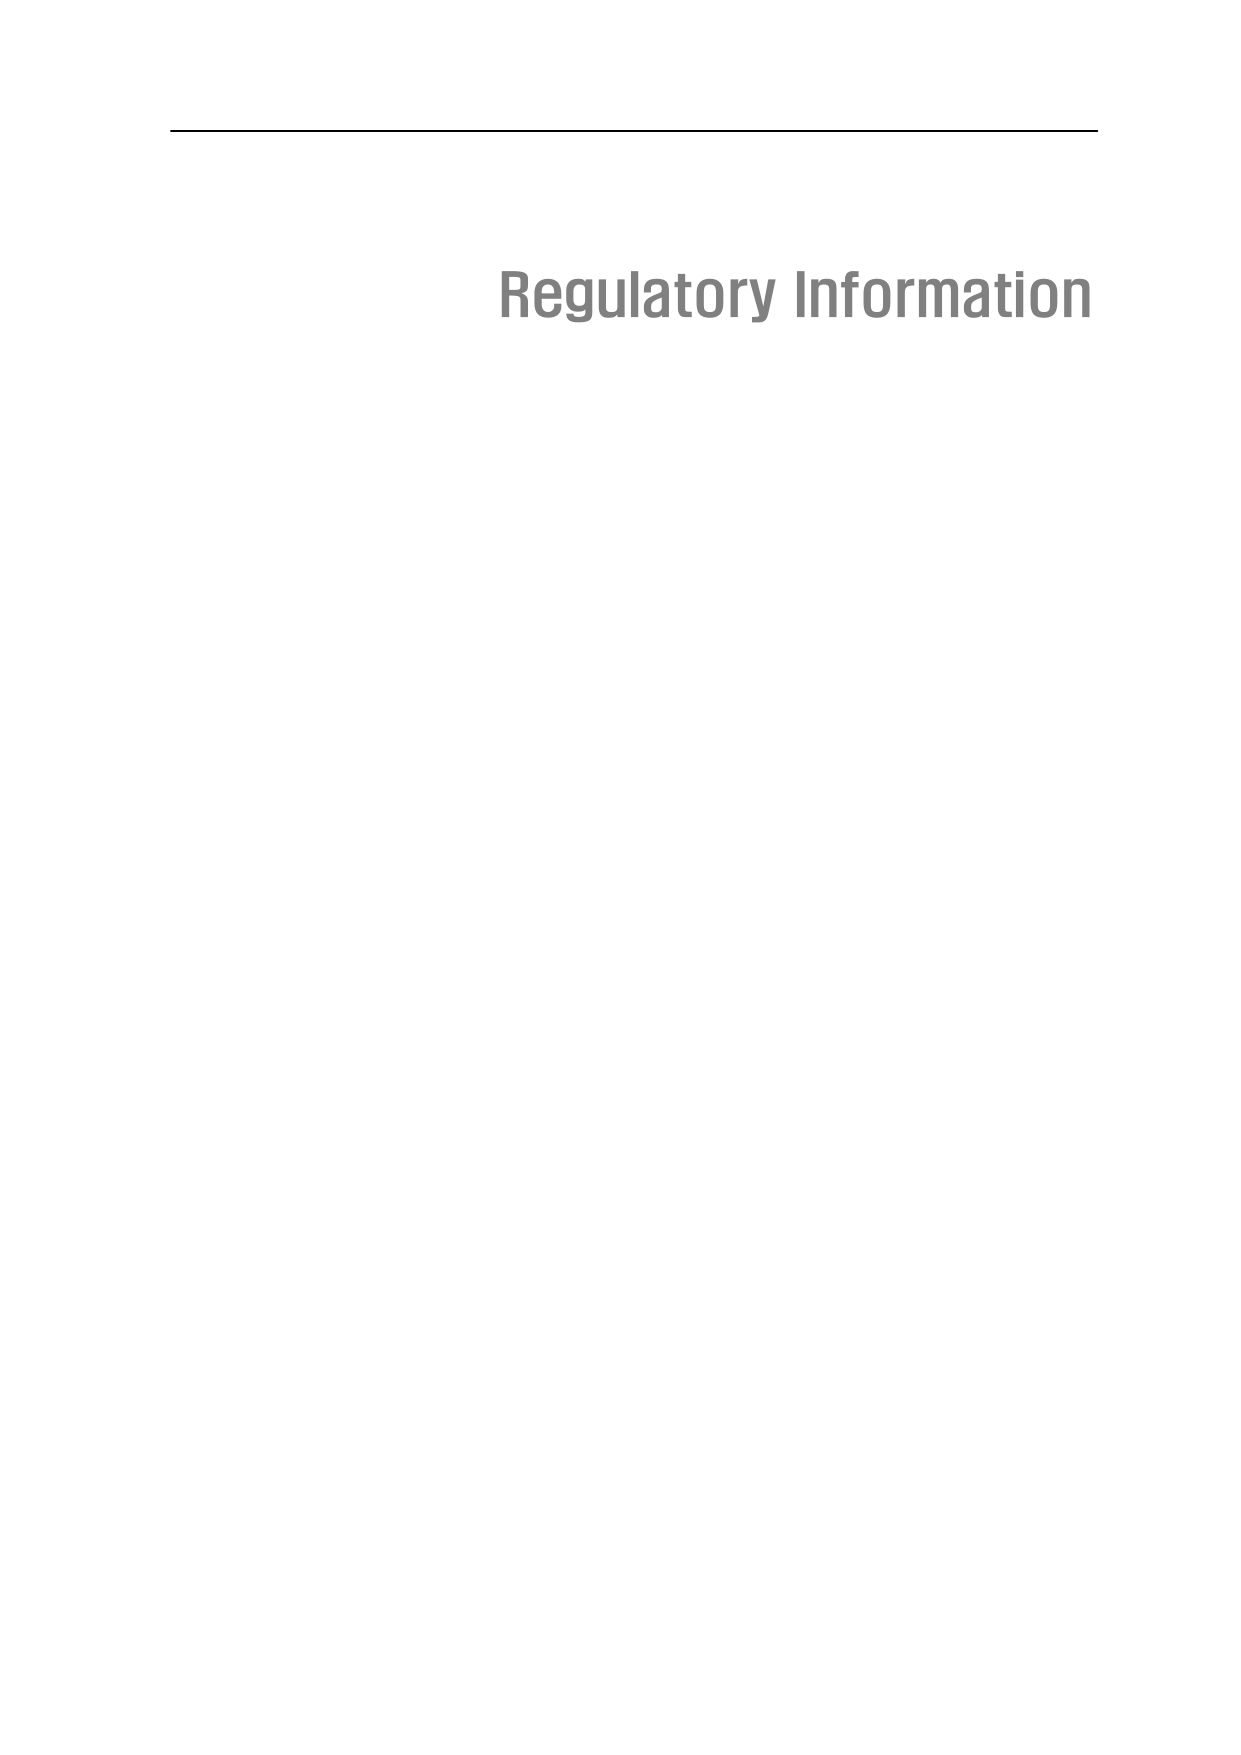      Regulatory Information                          